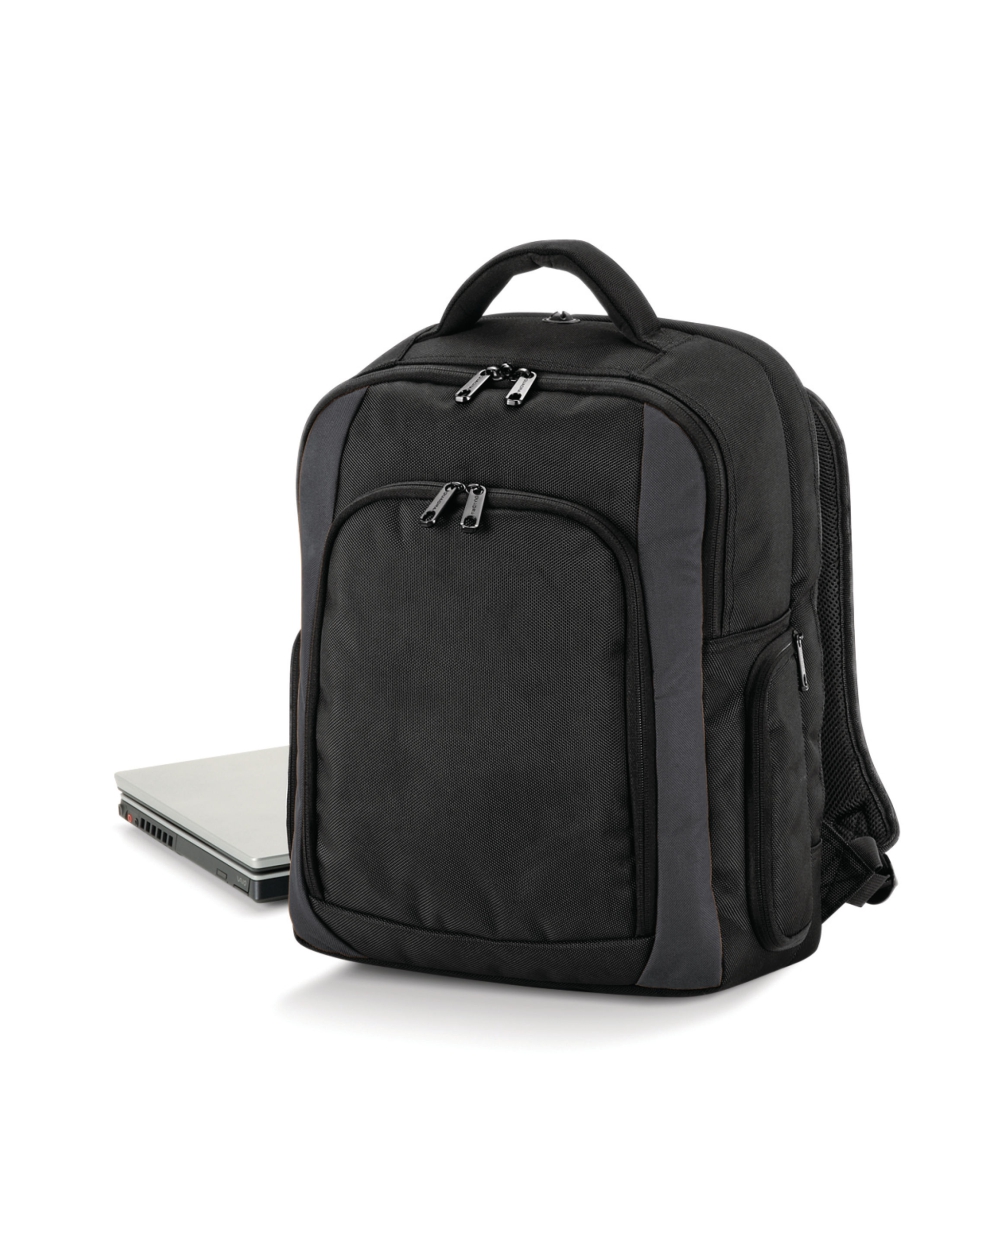 Tungsten Laptop Backpack Black/Dark Graphite (QD968) - LA Safety Supplies